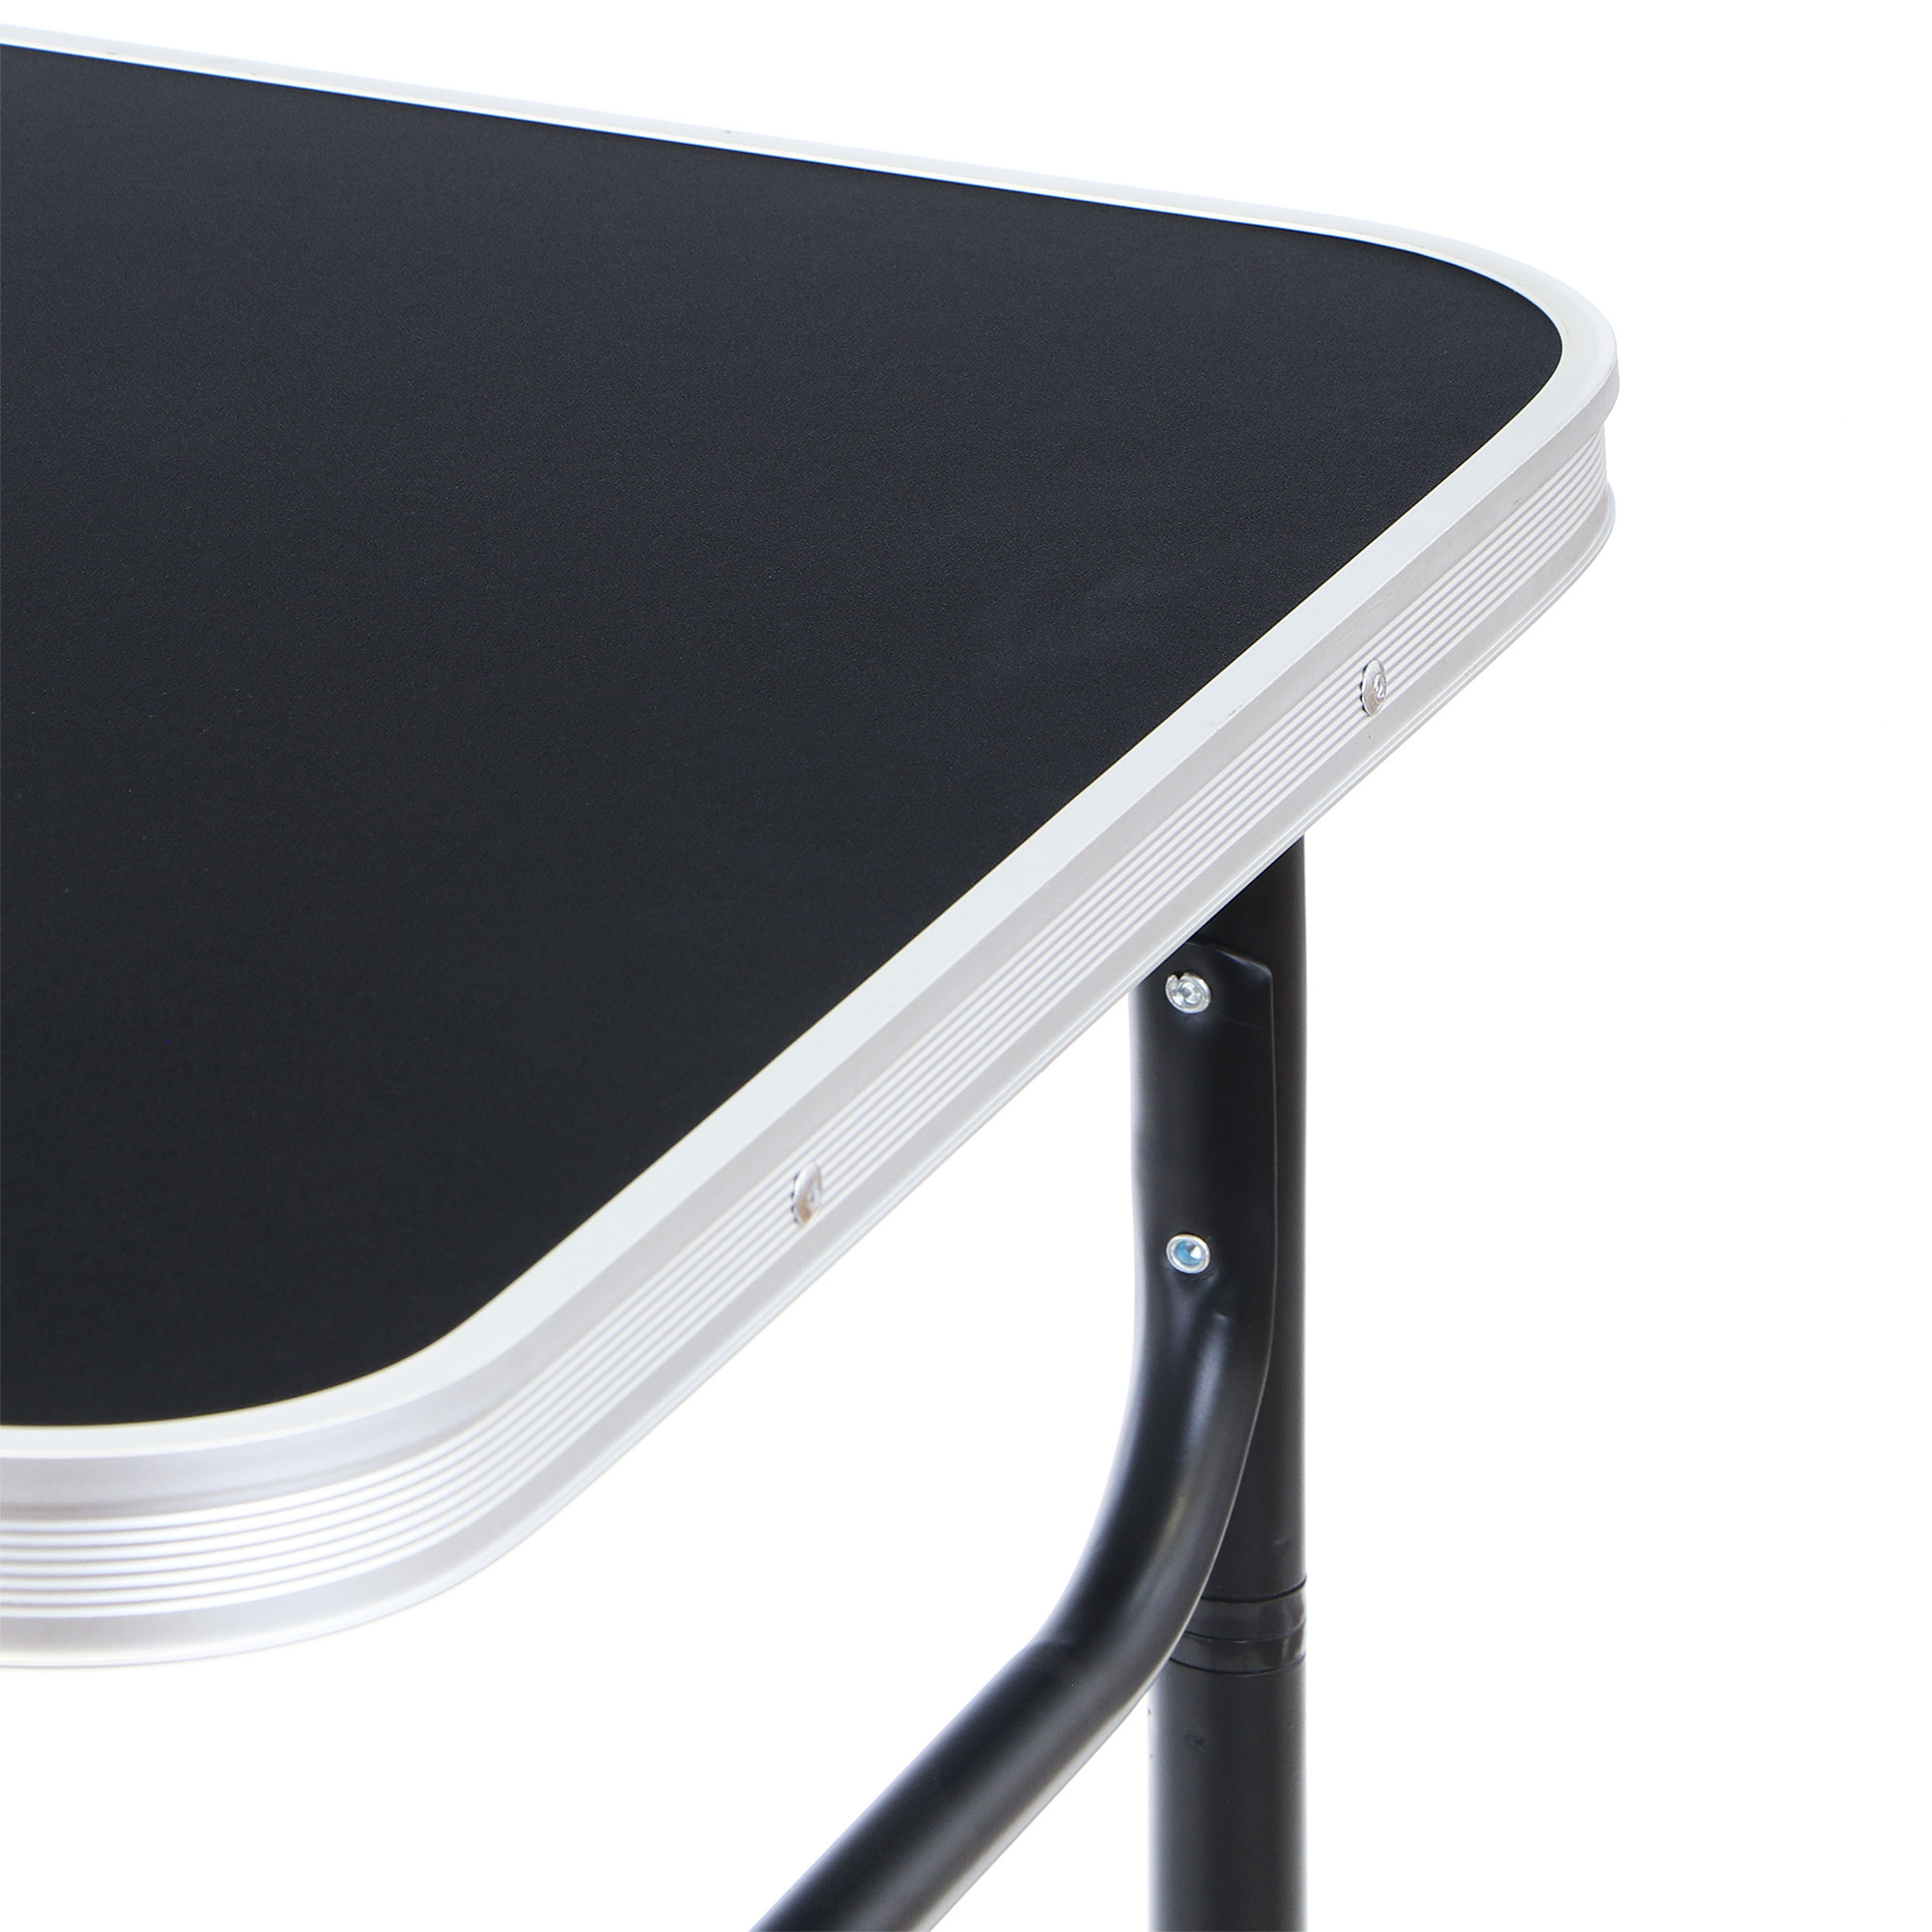 Стол для кемпинга складной Koopman furniture 75x55x25/60cm, цвет черный, размер 75x55x25/60 см - фото 4